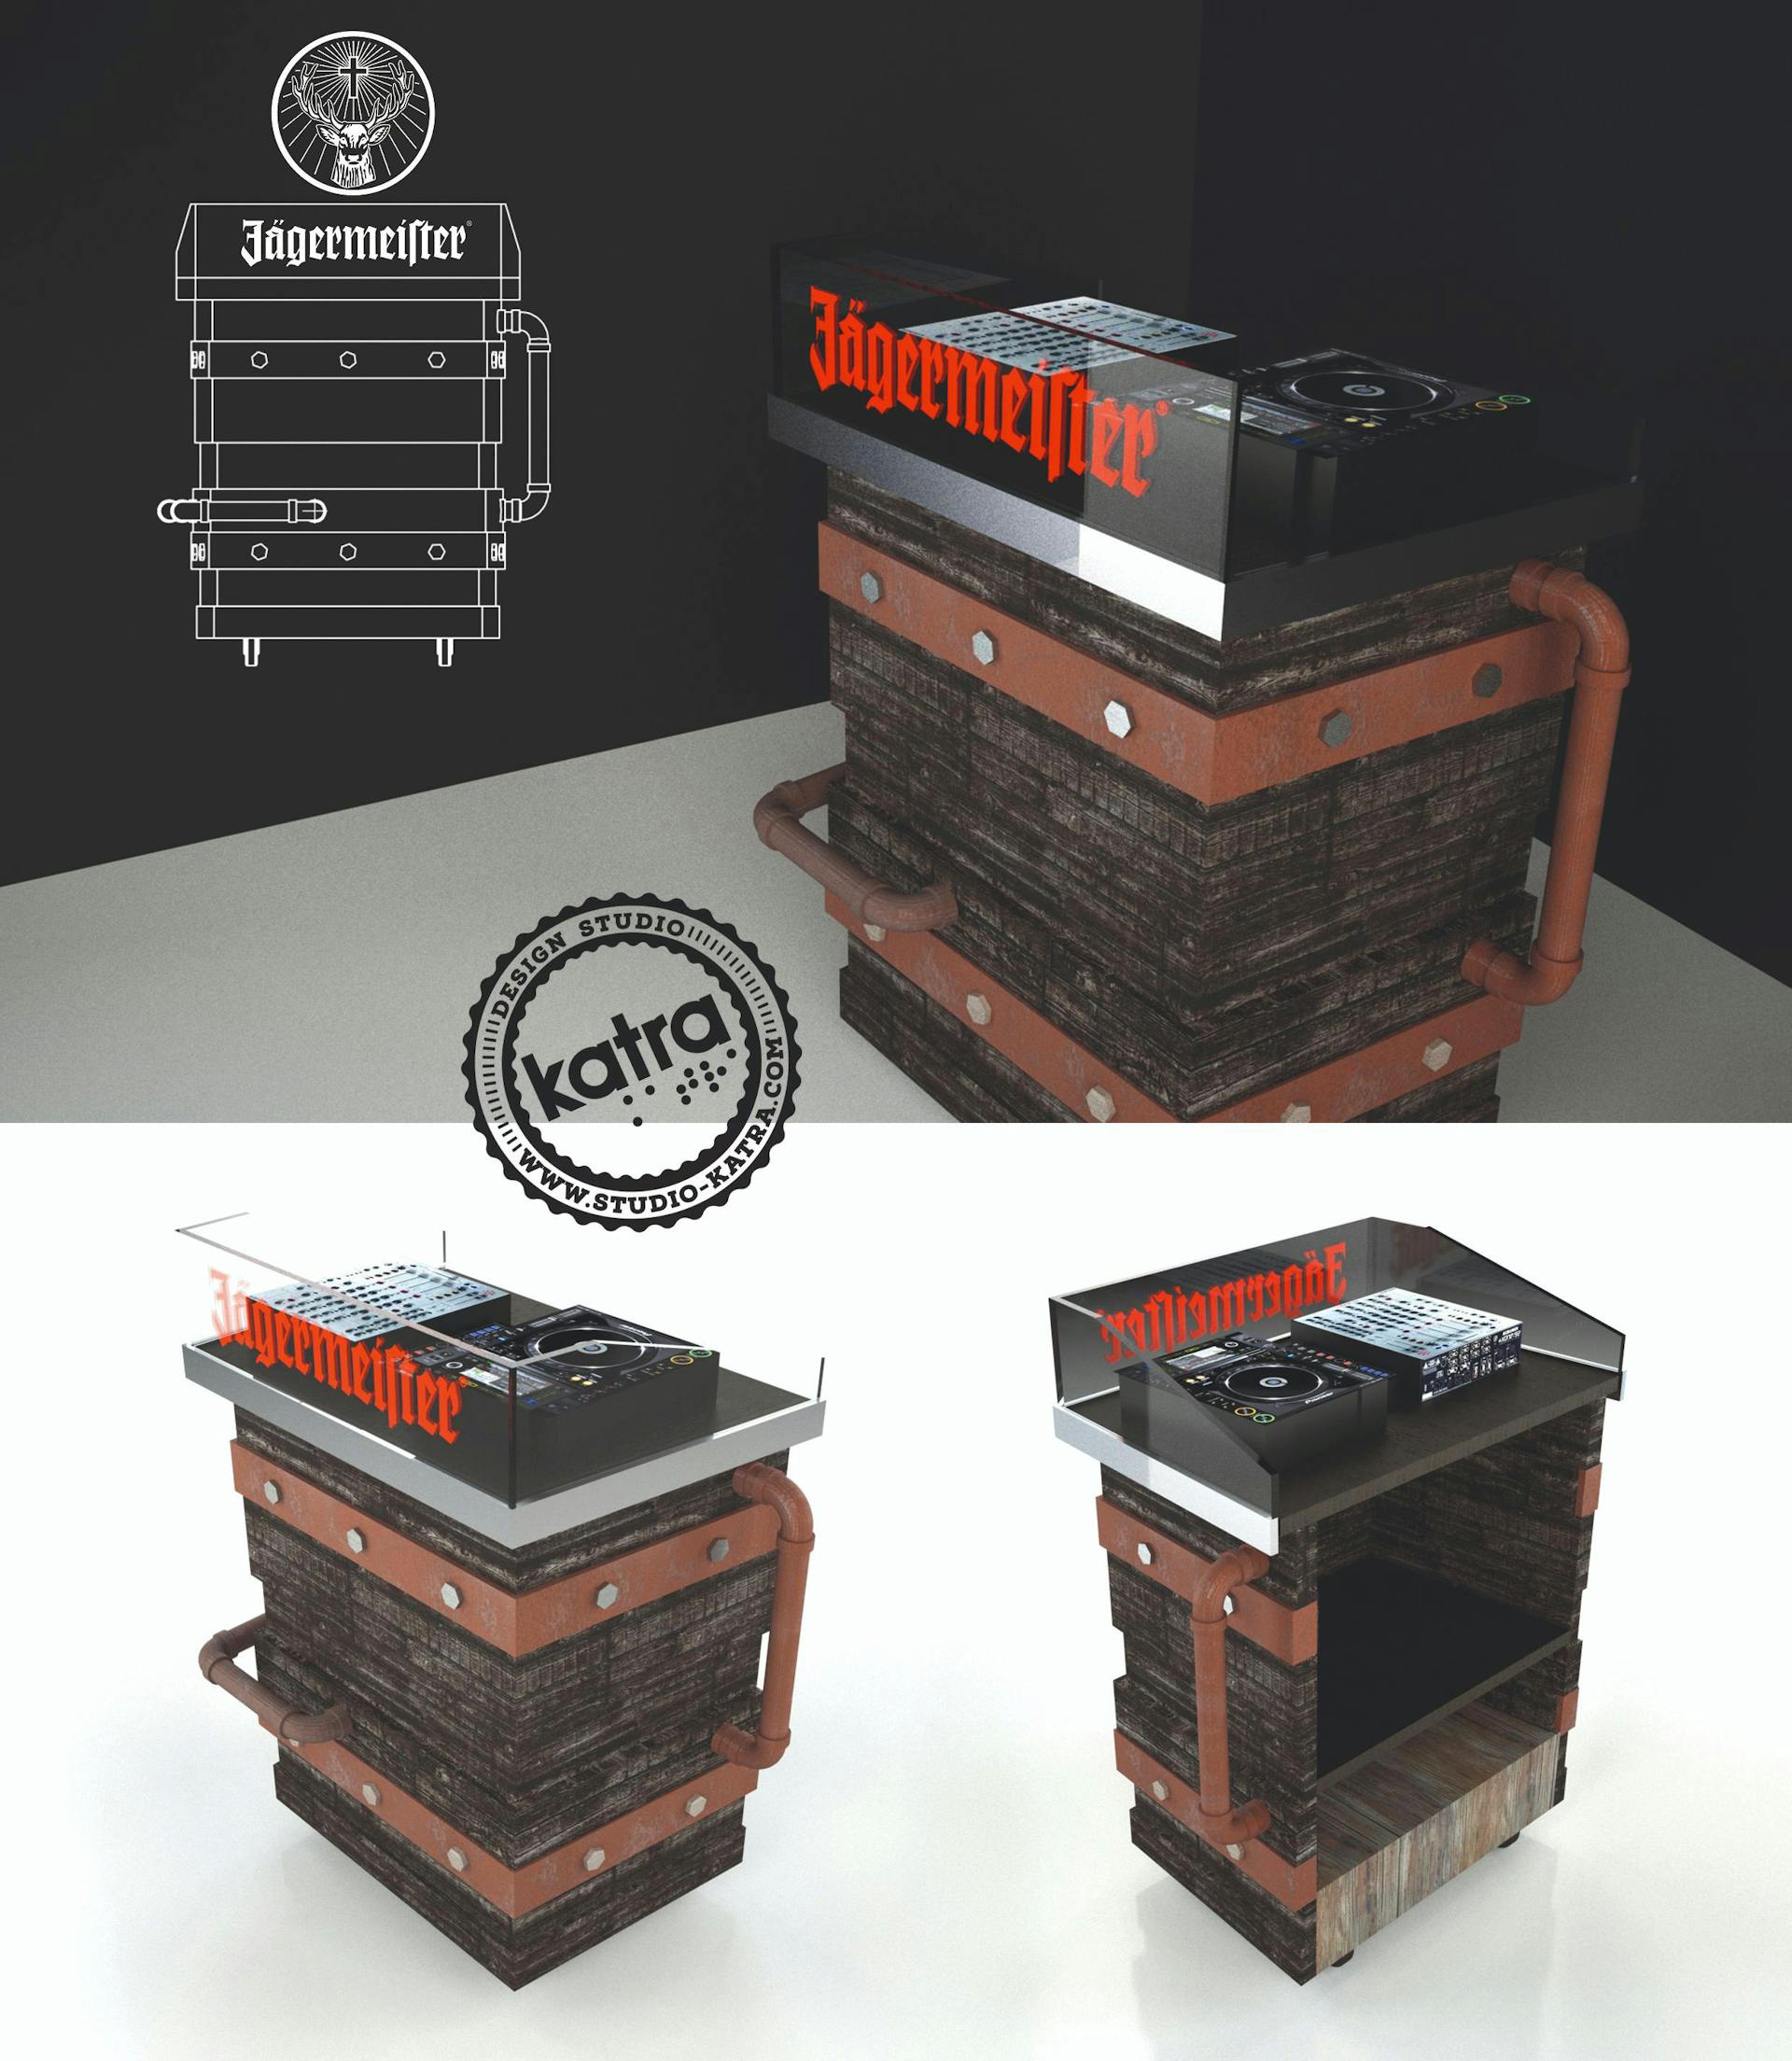 Modélisation 3D du design produit d'une cabine de DJ Jägermeister, réalisée par l'agence de design Studio Katra.